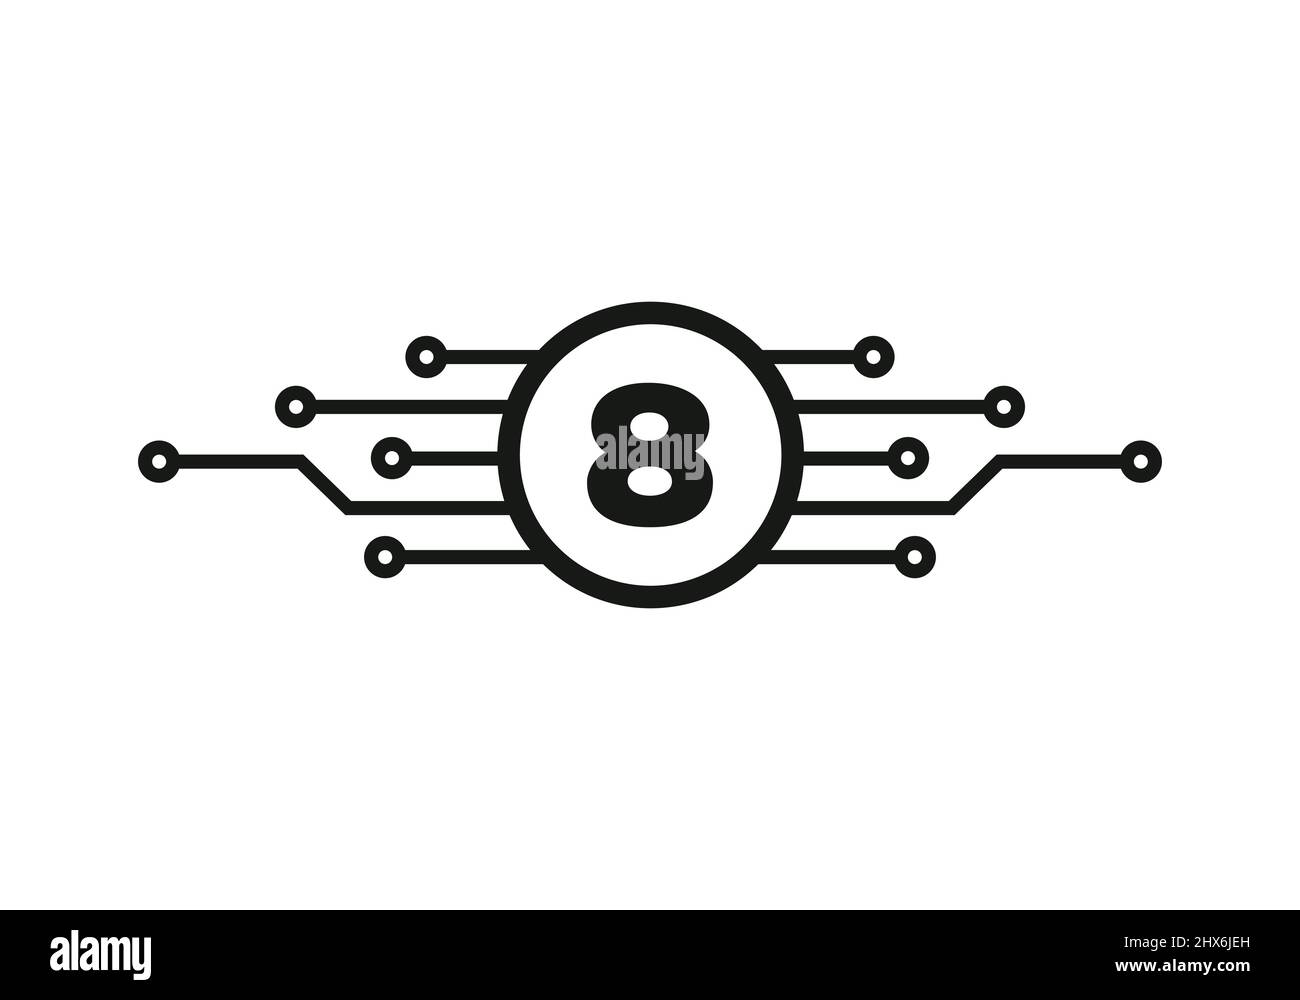 Modèle de logo Letter 8. 8 lettre pour la protection du logo Cyber, la technologie, la biotechnologie et la haute technologie. Logo réseau Illustration de Vecteur